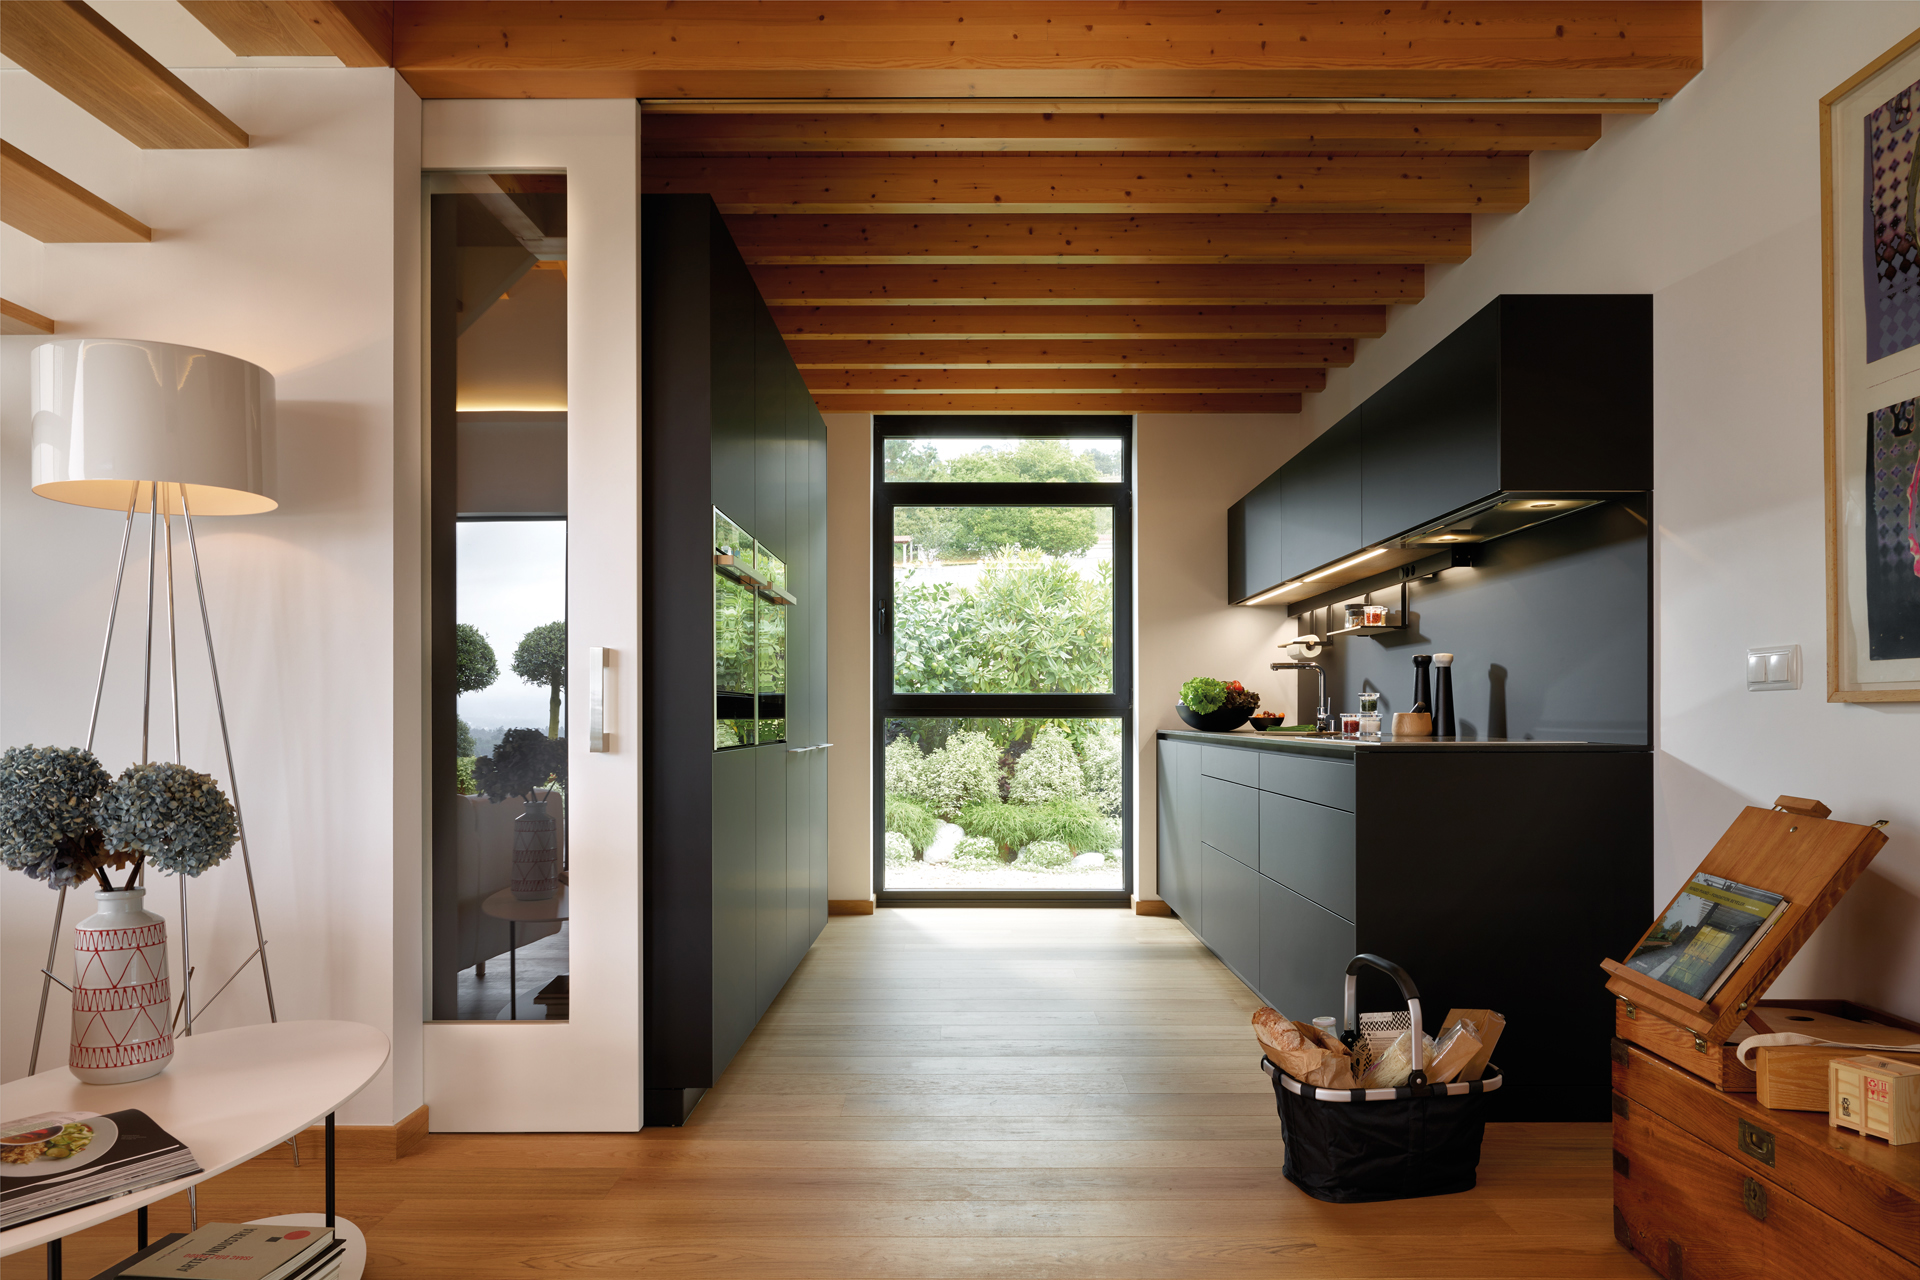 Cocina negra en paralelo abierta al comedor, equipada con muebles diseñados por Santos